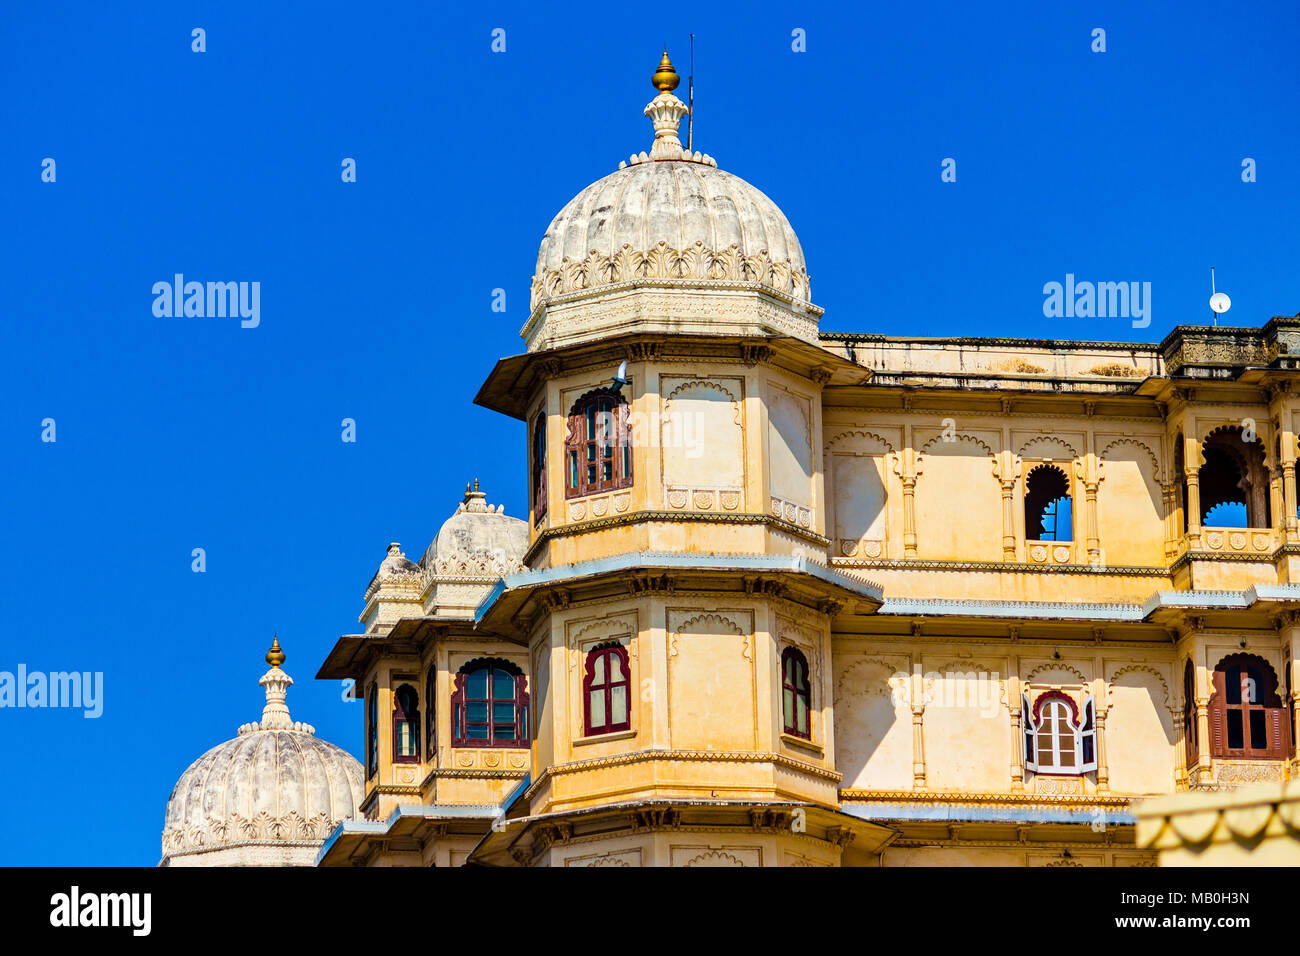 Tumba del Palacio de la ciudad, Udaipur, Rajasthan, India. El Palace, Udaipur, que estaba destinado a ser uno de los palacios más grandes del mundo. Foto de stock